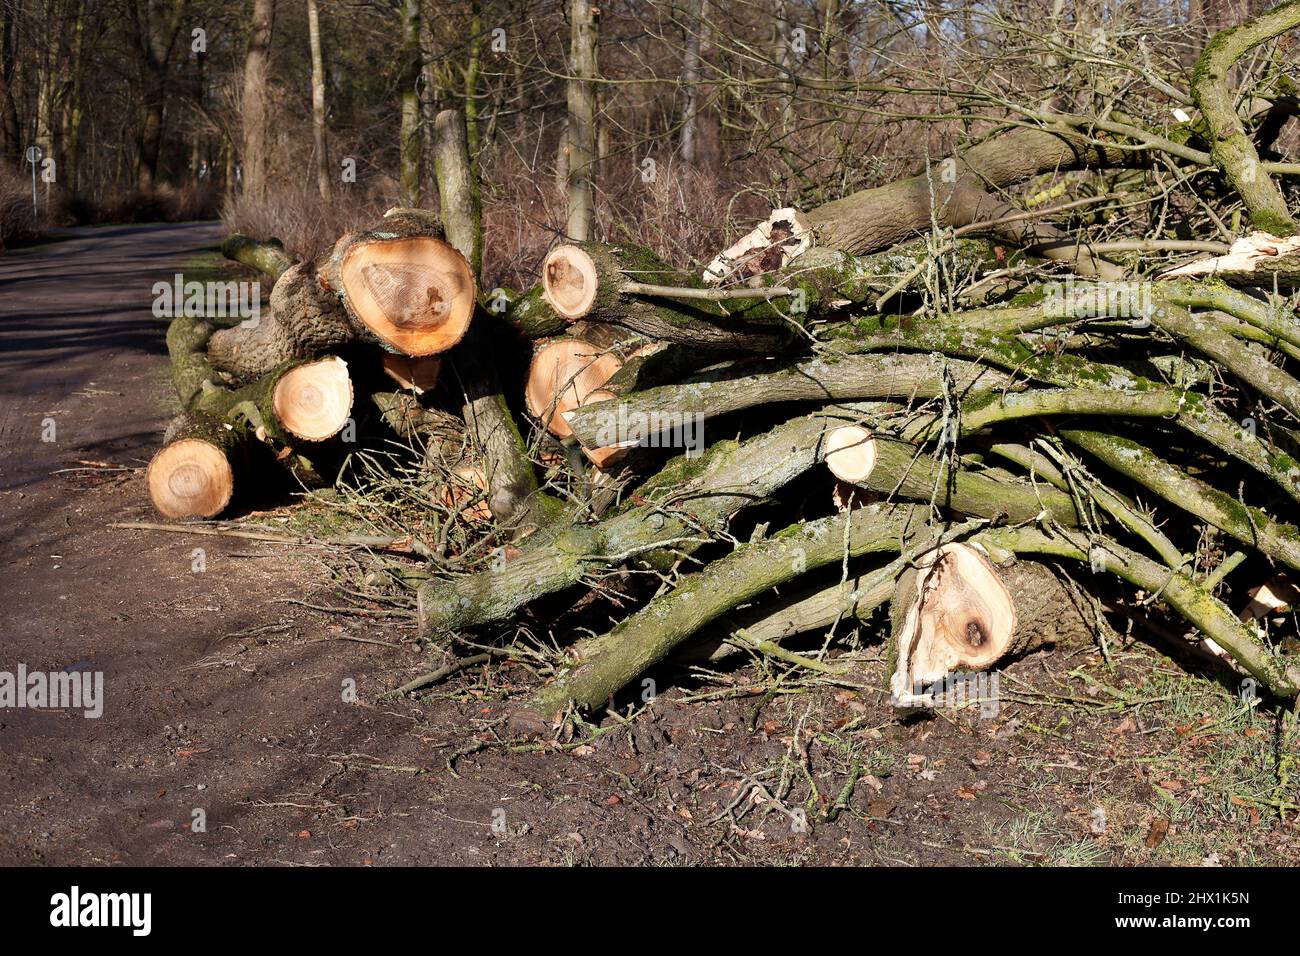 Sturmschaden, abgeknickte Zweige und Baumstämme, Deutschland, Europa Stock Photo